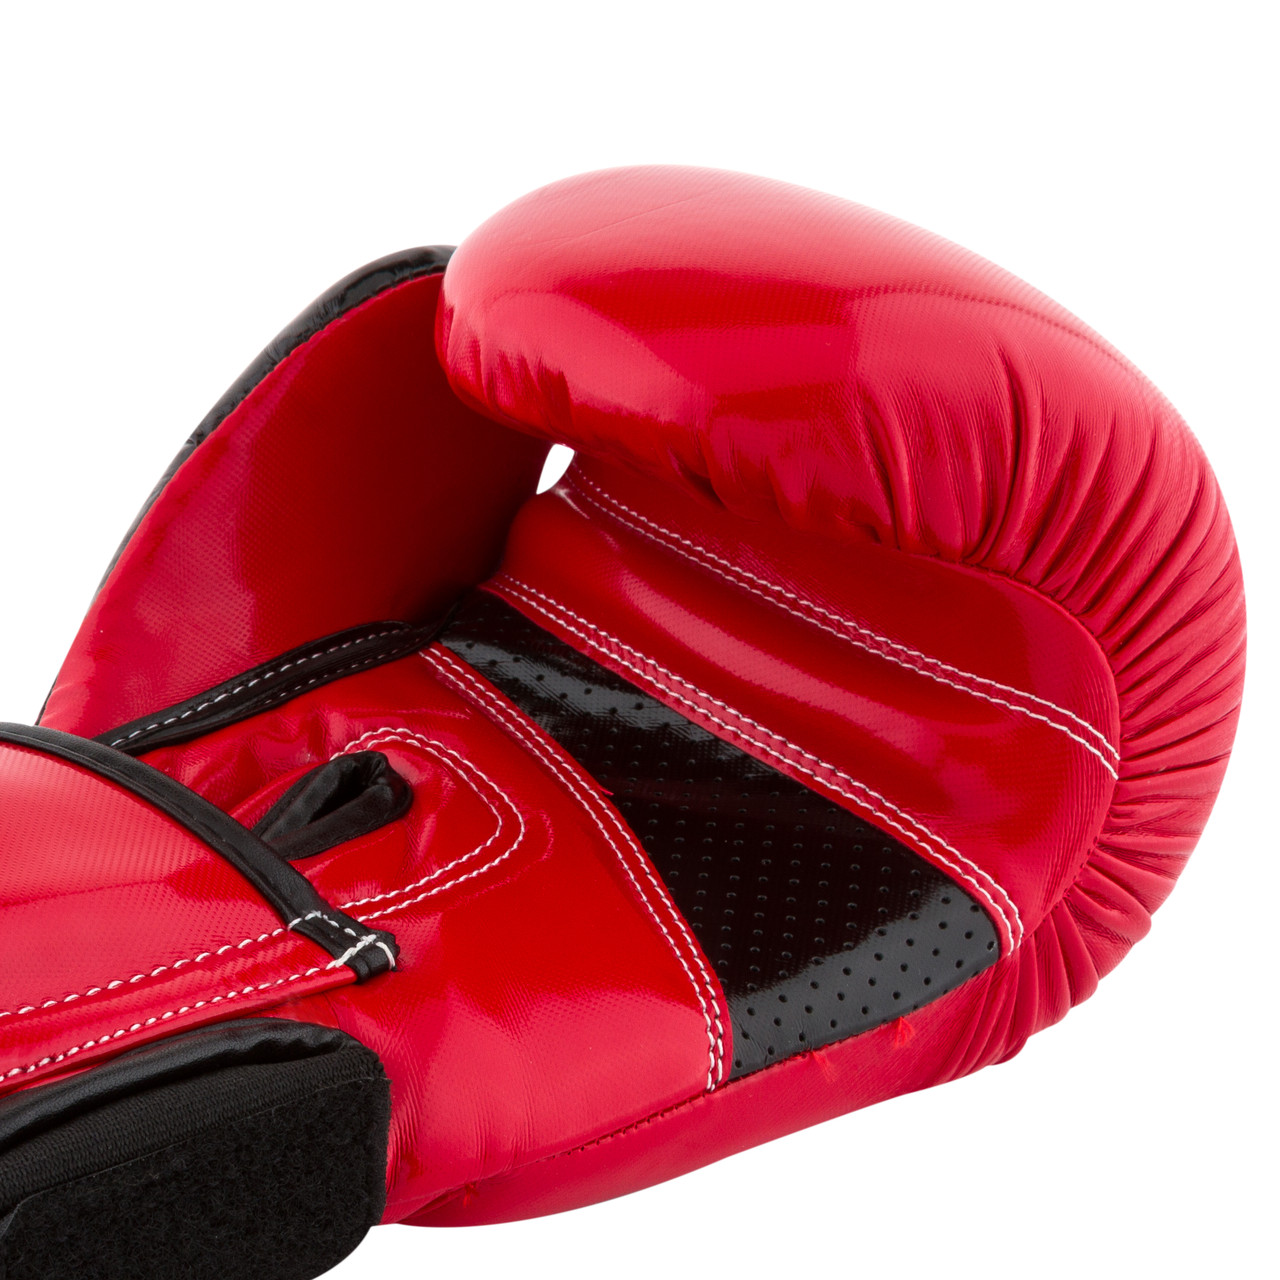 Боксерські рукавички PowerPlay 3017 червоні карбон 8 унцій